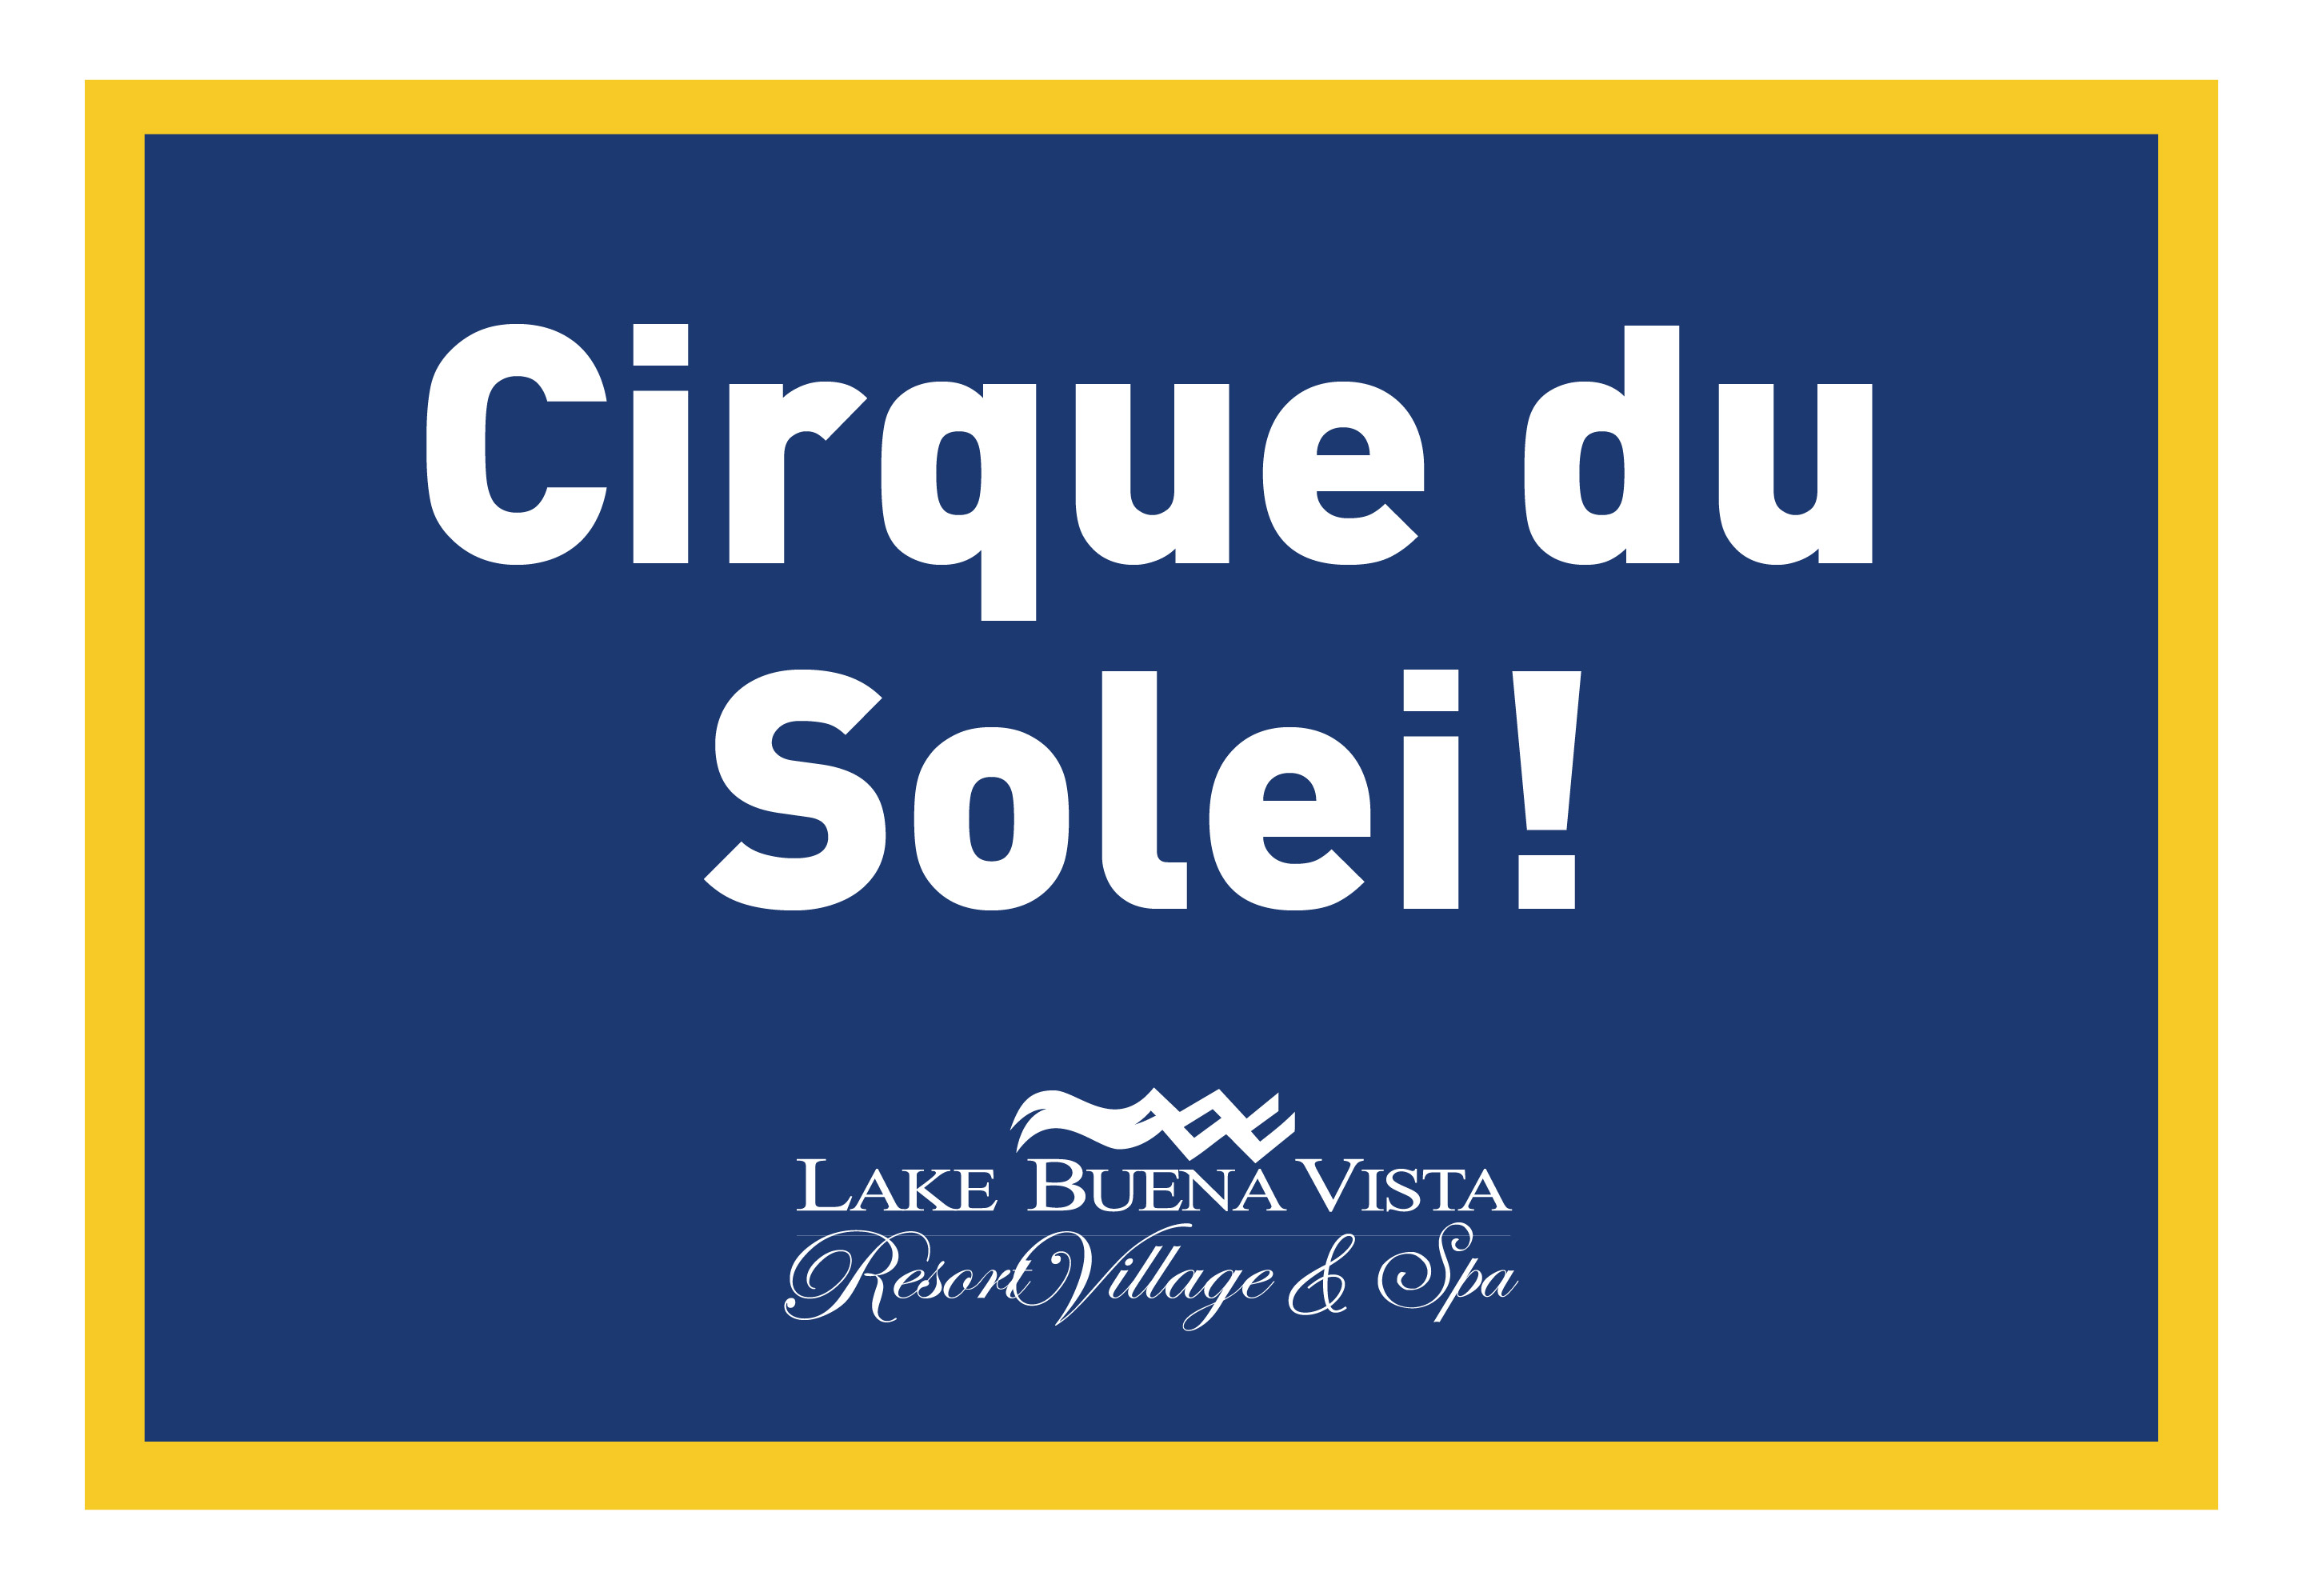 Lake Buena Vista Resort Village & Spa - Cirque du Sole